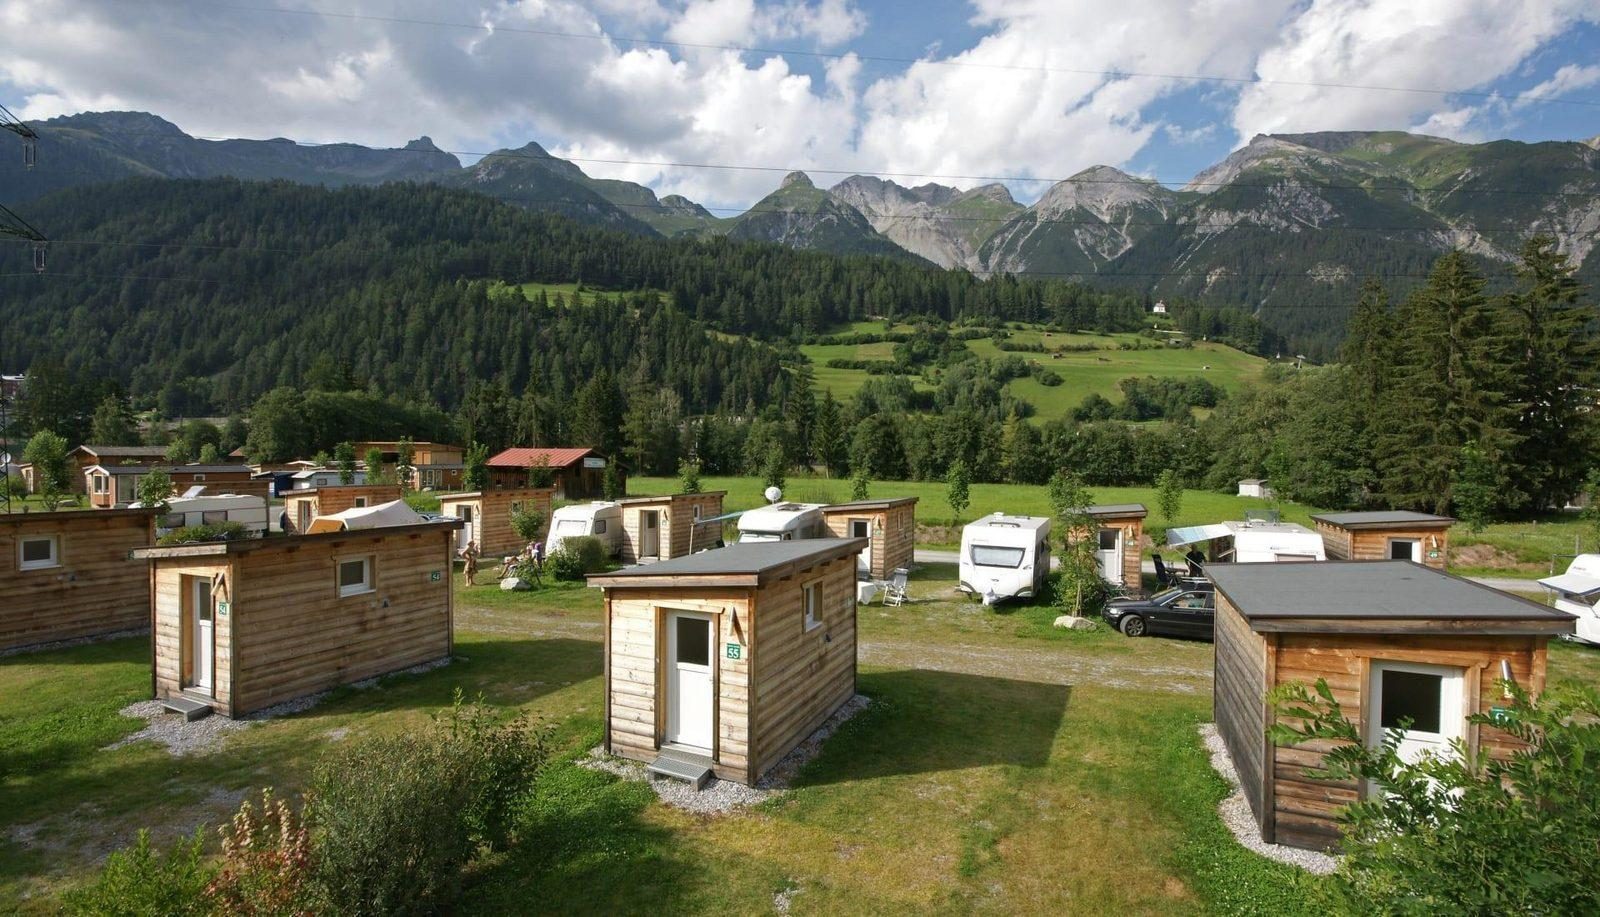 Campingplatz mit privaten Sanitäreinrichtungen in Österreich